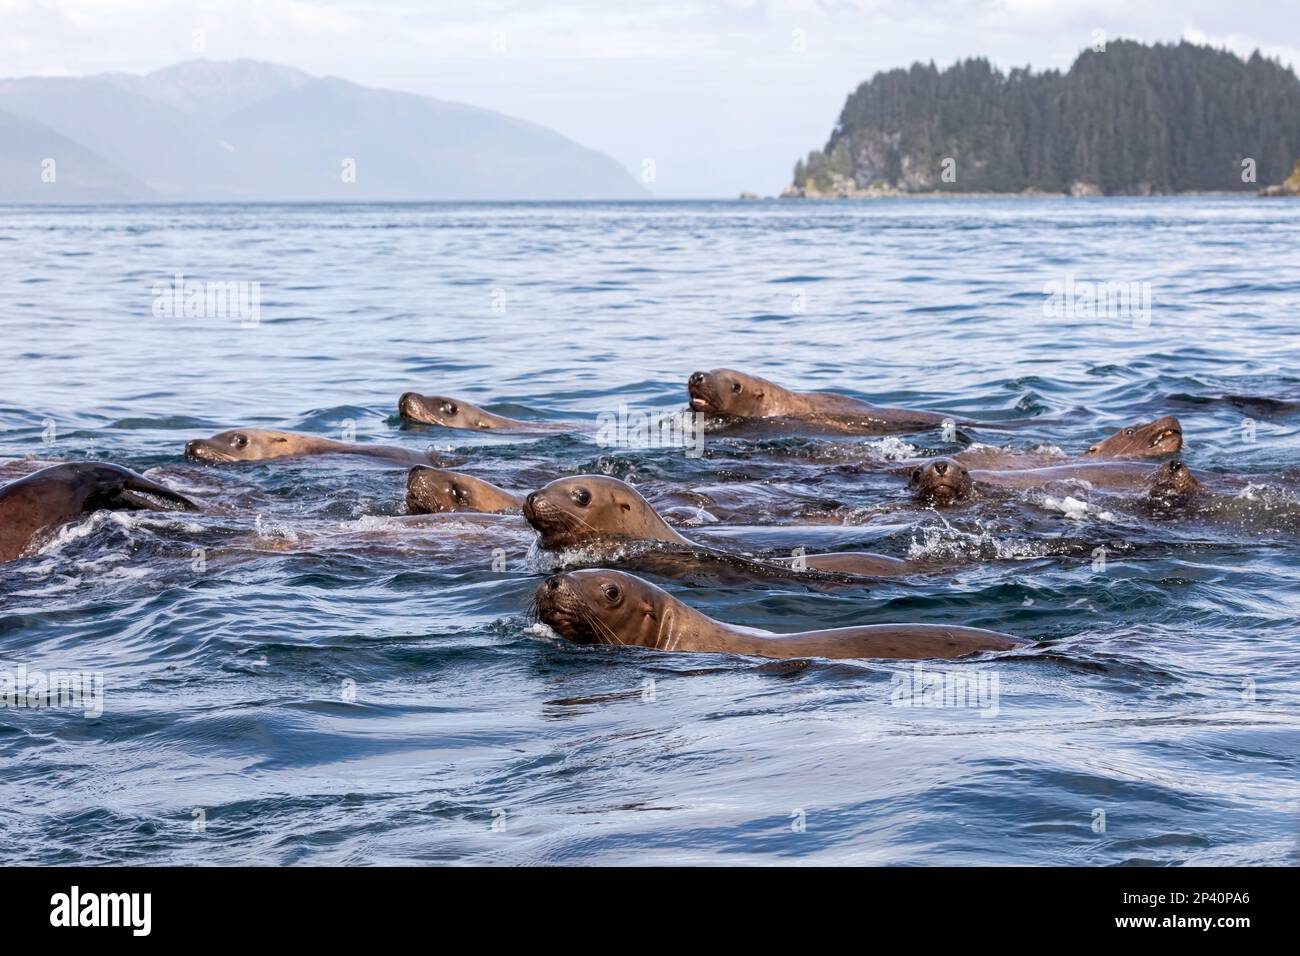 Les lions de mer de Steller, Eumetopias jubatus, nageant près des îles Inian, dans le sud-est de l'Alaska, aux États-Unis. Banque D'Images